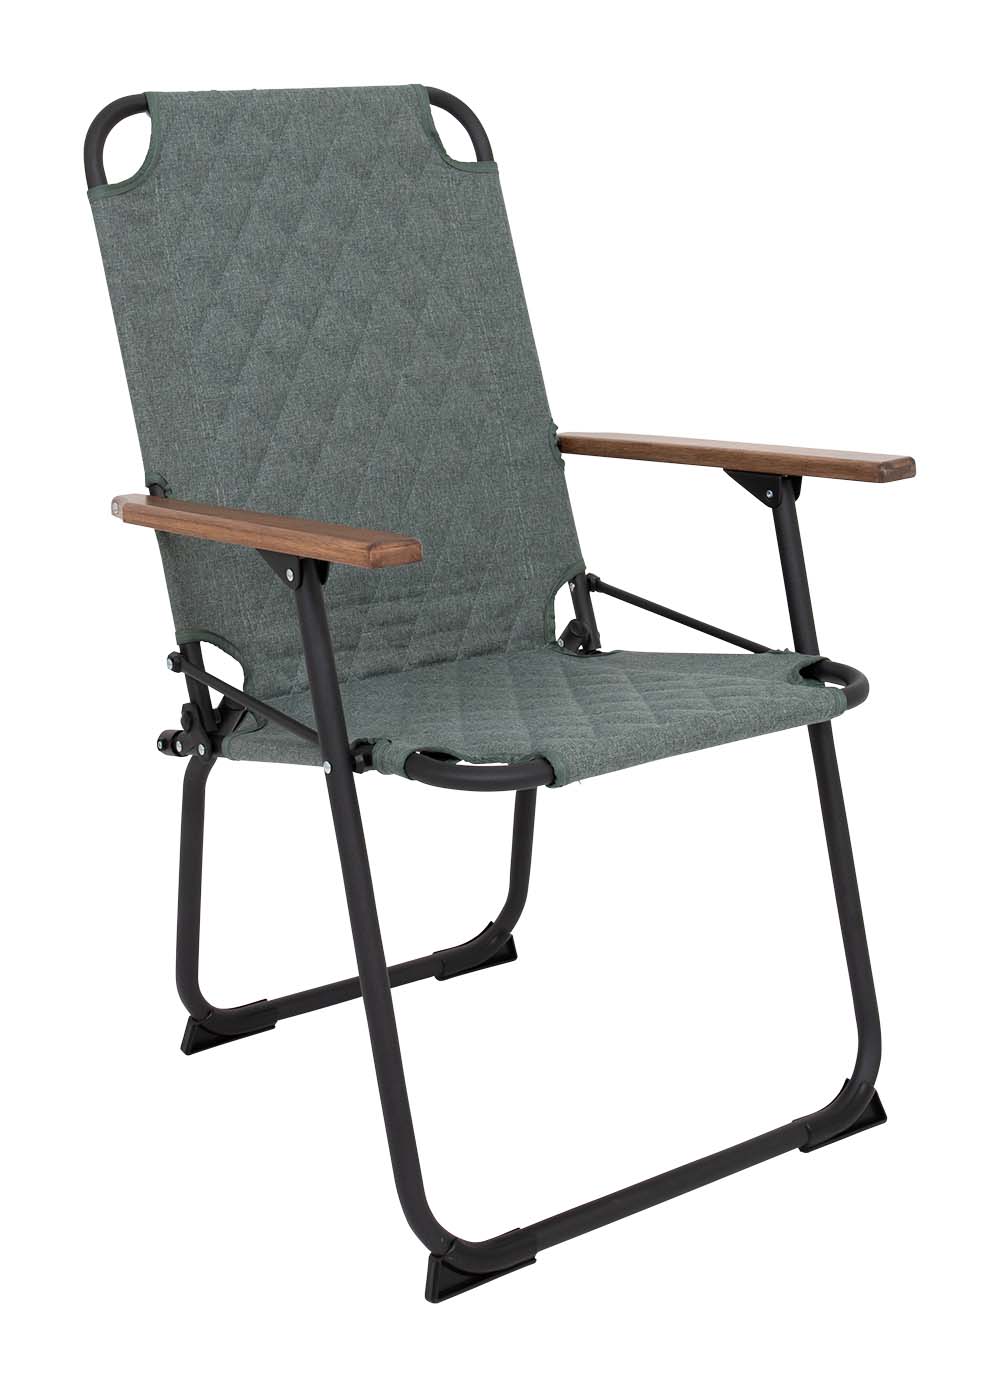 1211896 "De klassieker met een moderne industriële uitstraling. Een stoel waarbij stijl, comfort en functionaliteit worden gecombineerd. Voorzien van een gepolsterde Cationic bekleding voor ultiem comfort, een lichtgewicht aluminium frame en bamboe armleggers. Daarnaast is het stiksel voorzien van een modern patroon. Een ideale stoel voor in de tuin of op de camping, maar ook op het balkon en in de woonkamer. Daarnaast is deze stoel voorzien van extra stabilisatoren en een 'safety-lock' tegen ongewenst inklappen. Compact mee te nemen."